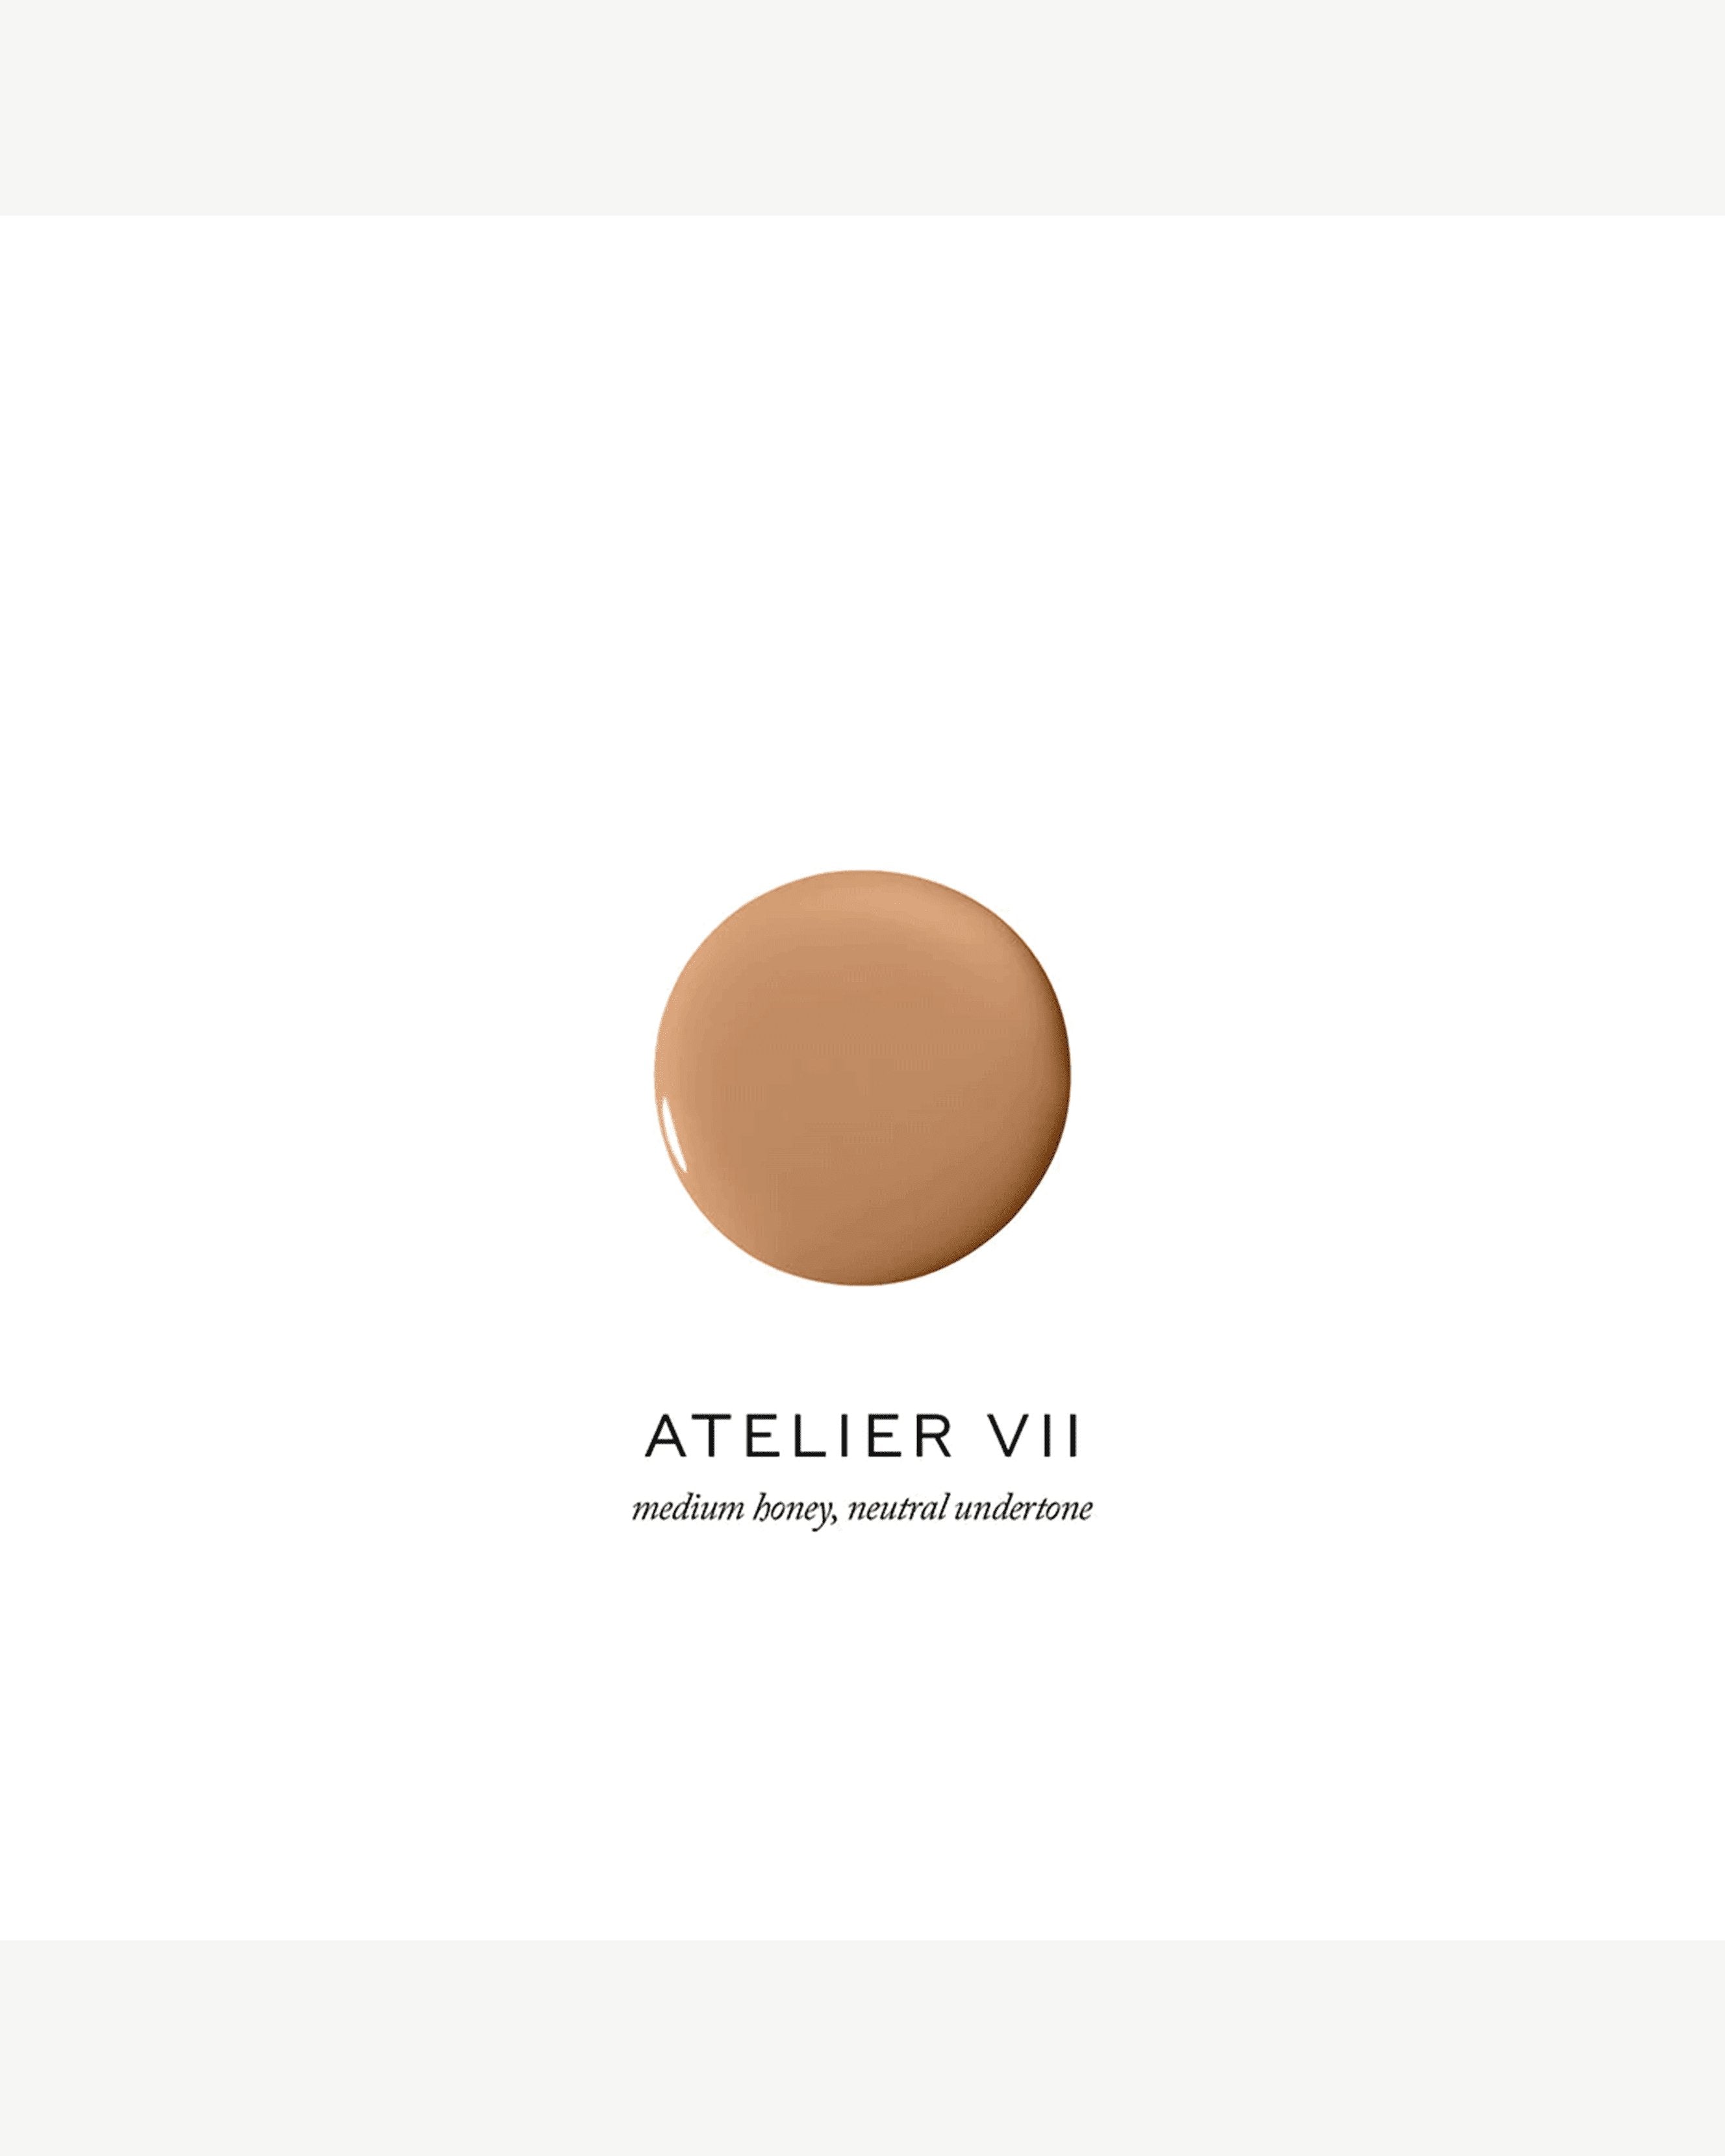 Atelier VII (medium honey, neutral undertone)